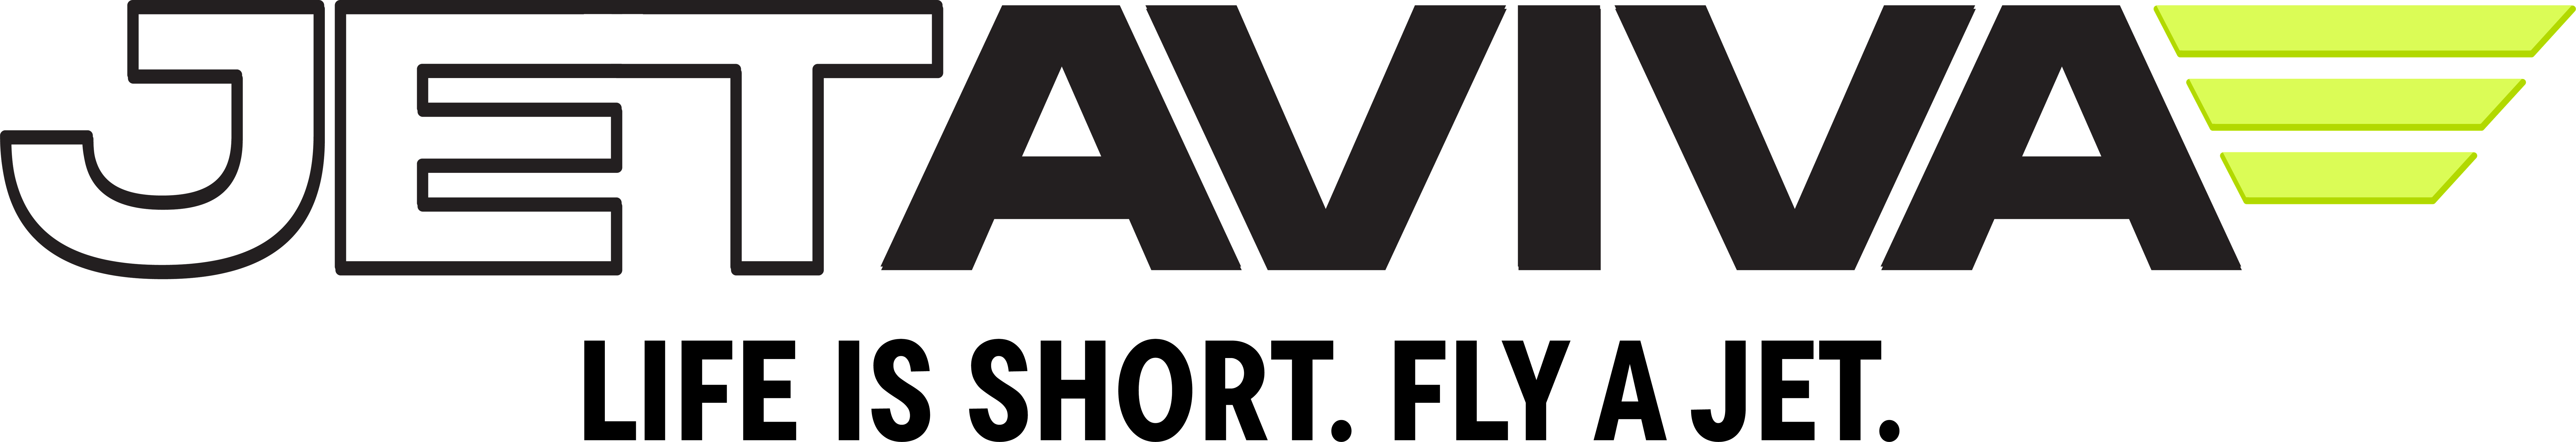 jetAVIVA logo